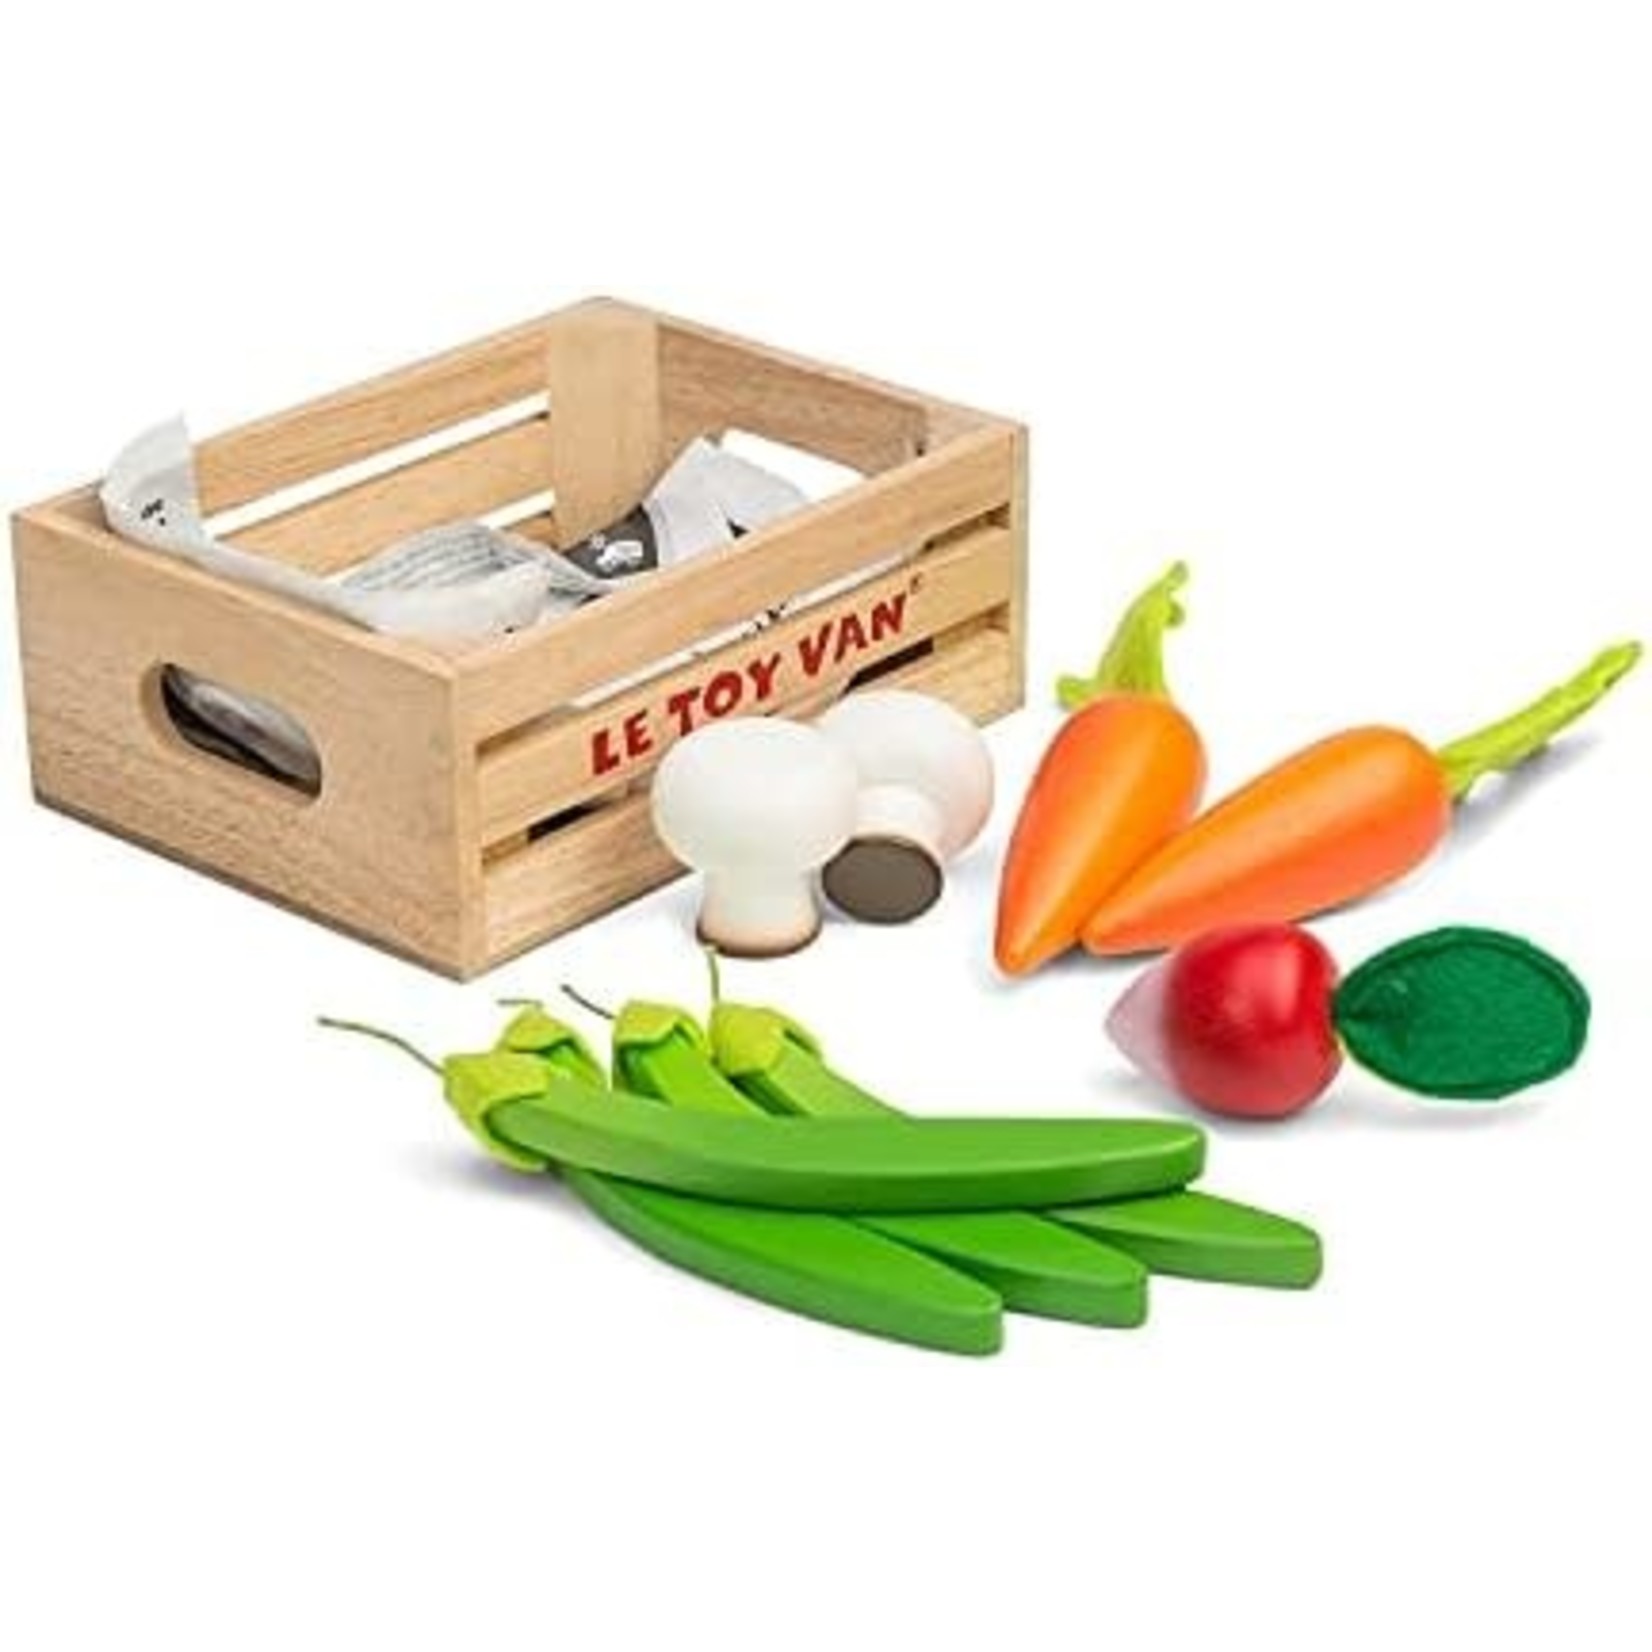 Le Toy Van veggie market crate